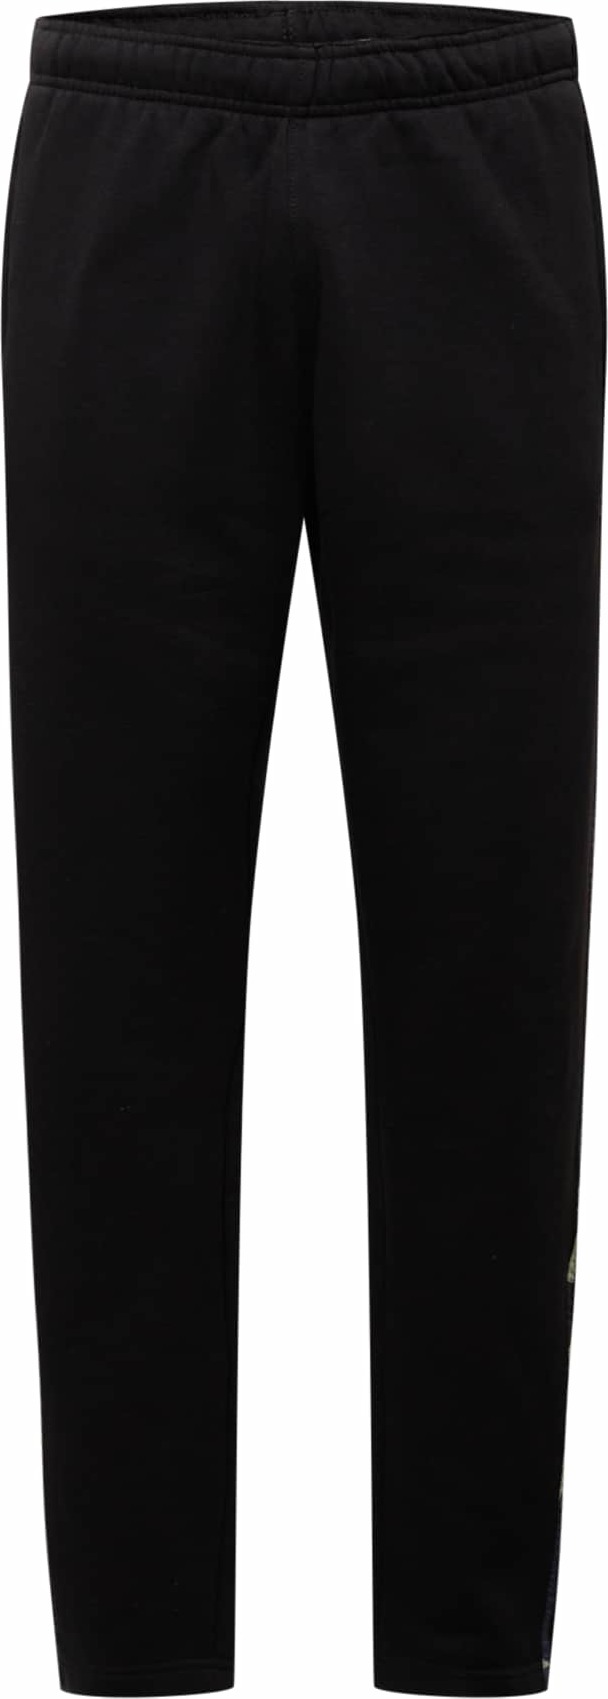 ADIDAS ORIGINALS Kalhoty 'Camo' černá / pastelově zelená / tmavě šedá / námořnická modř